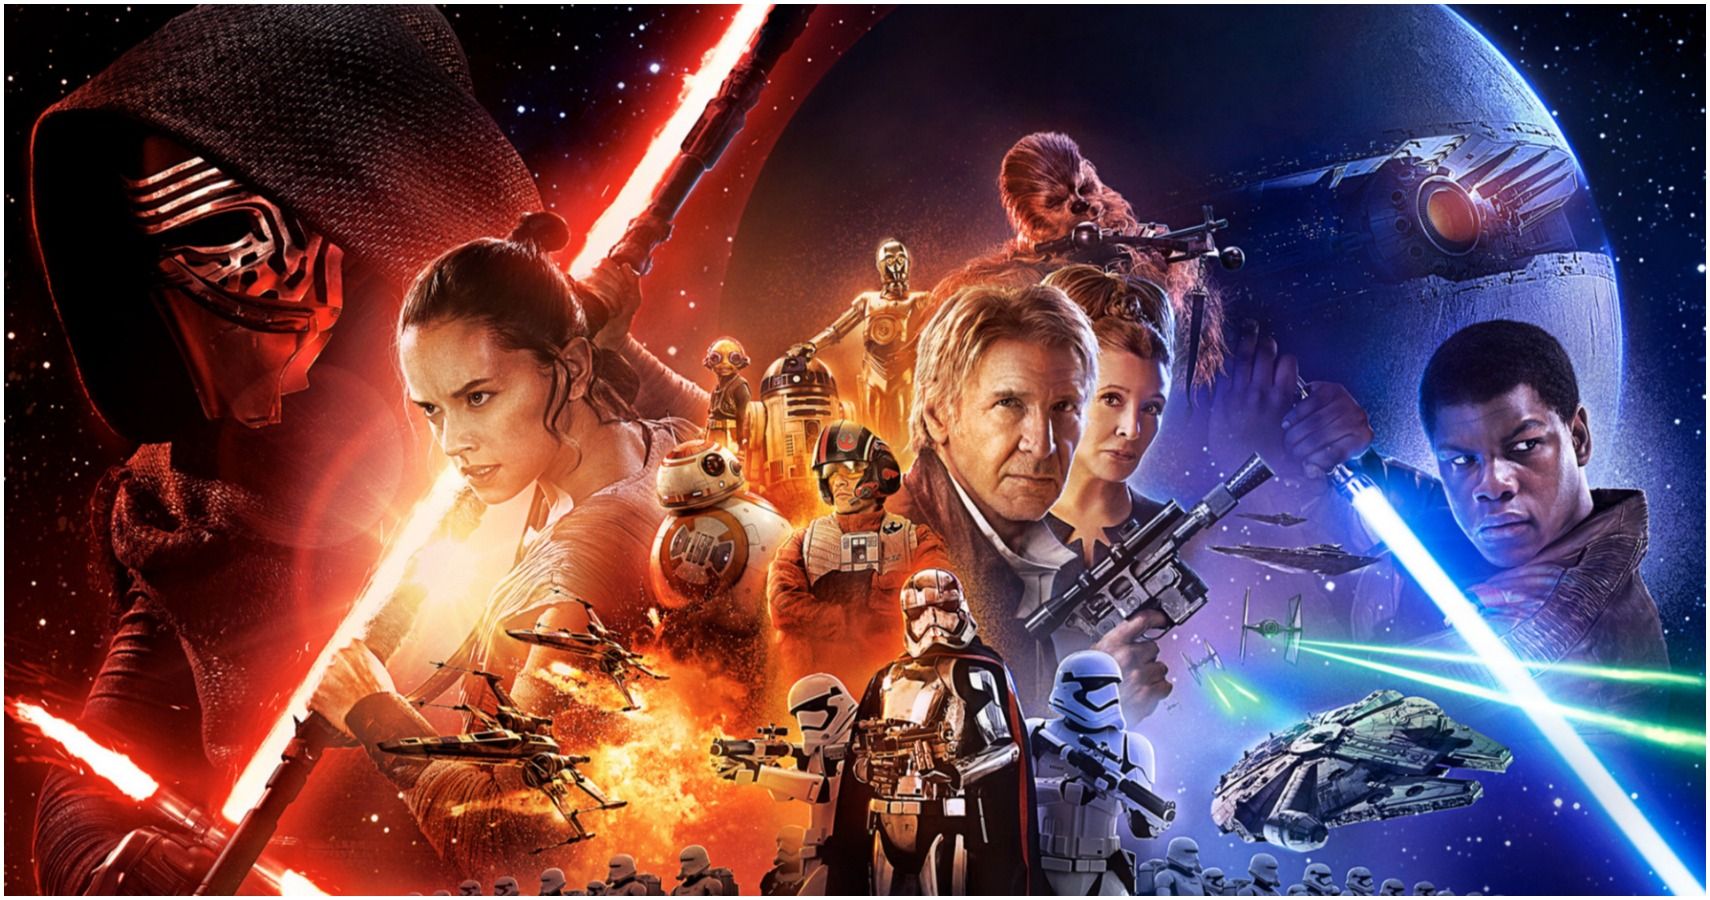 the force awakens full movie hd reddit